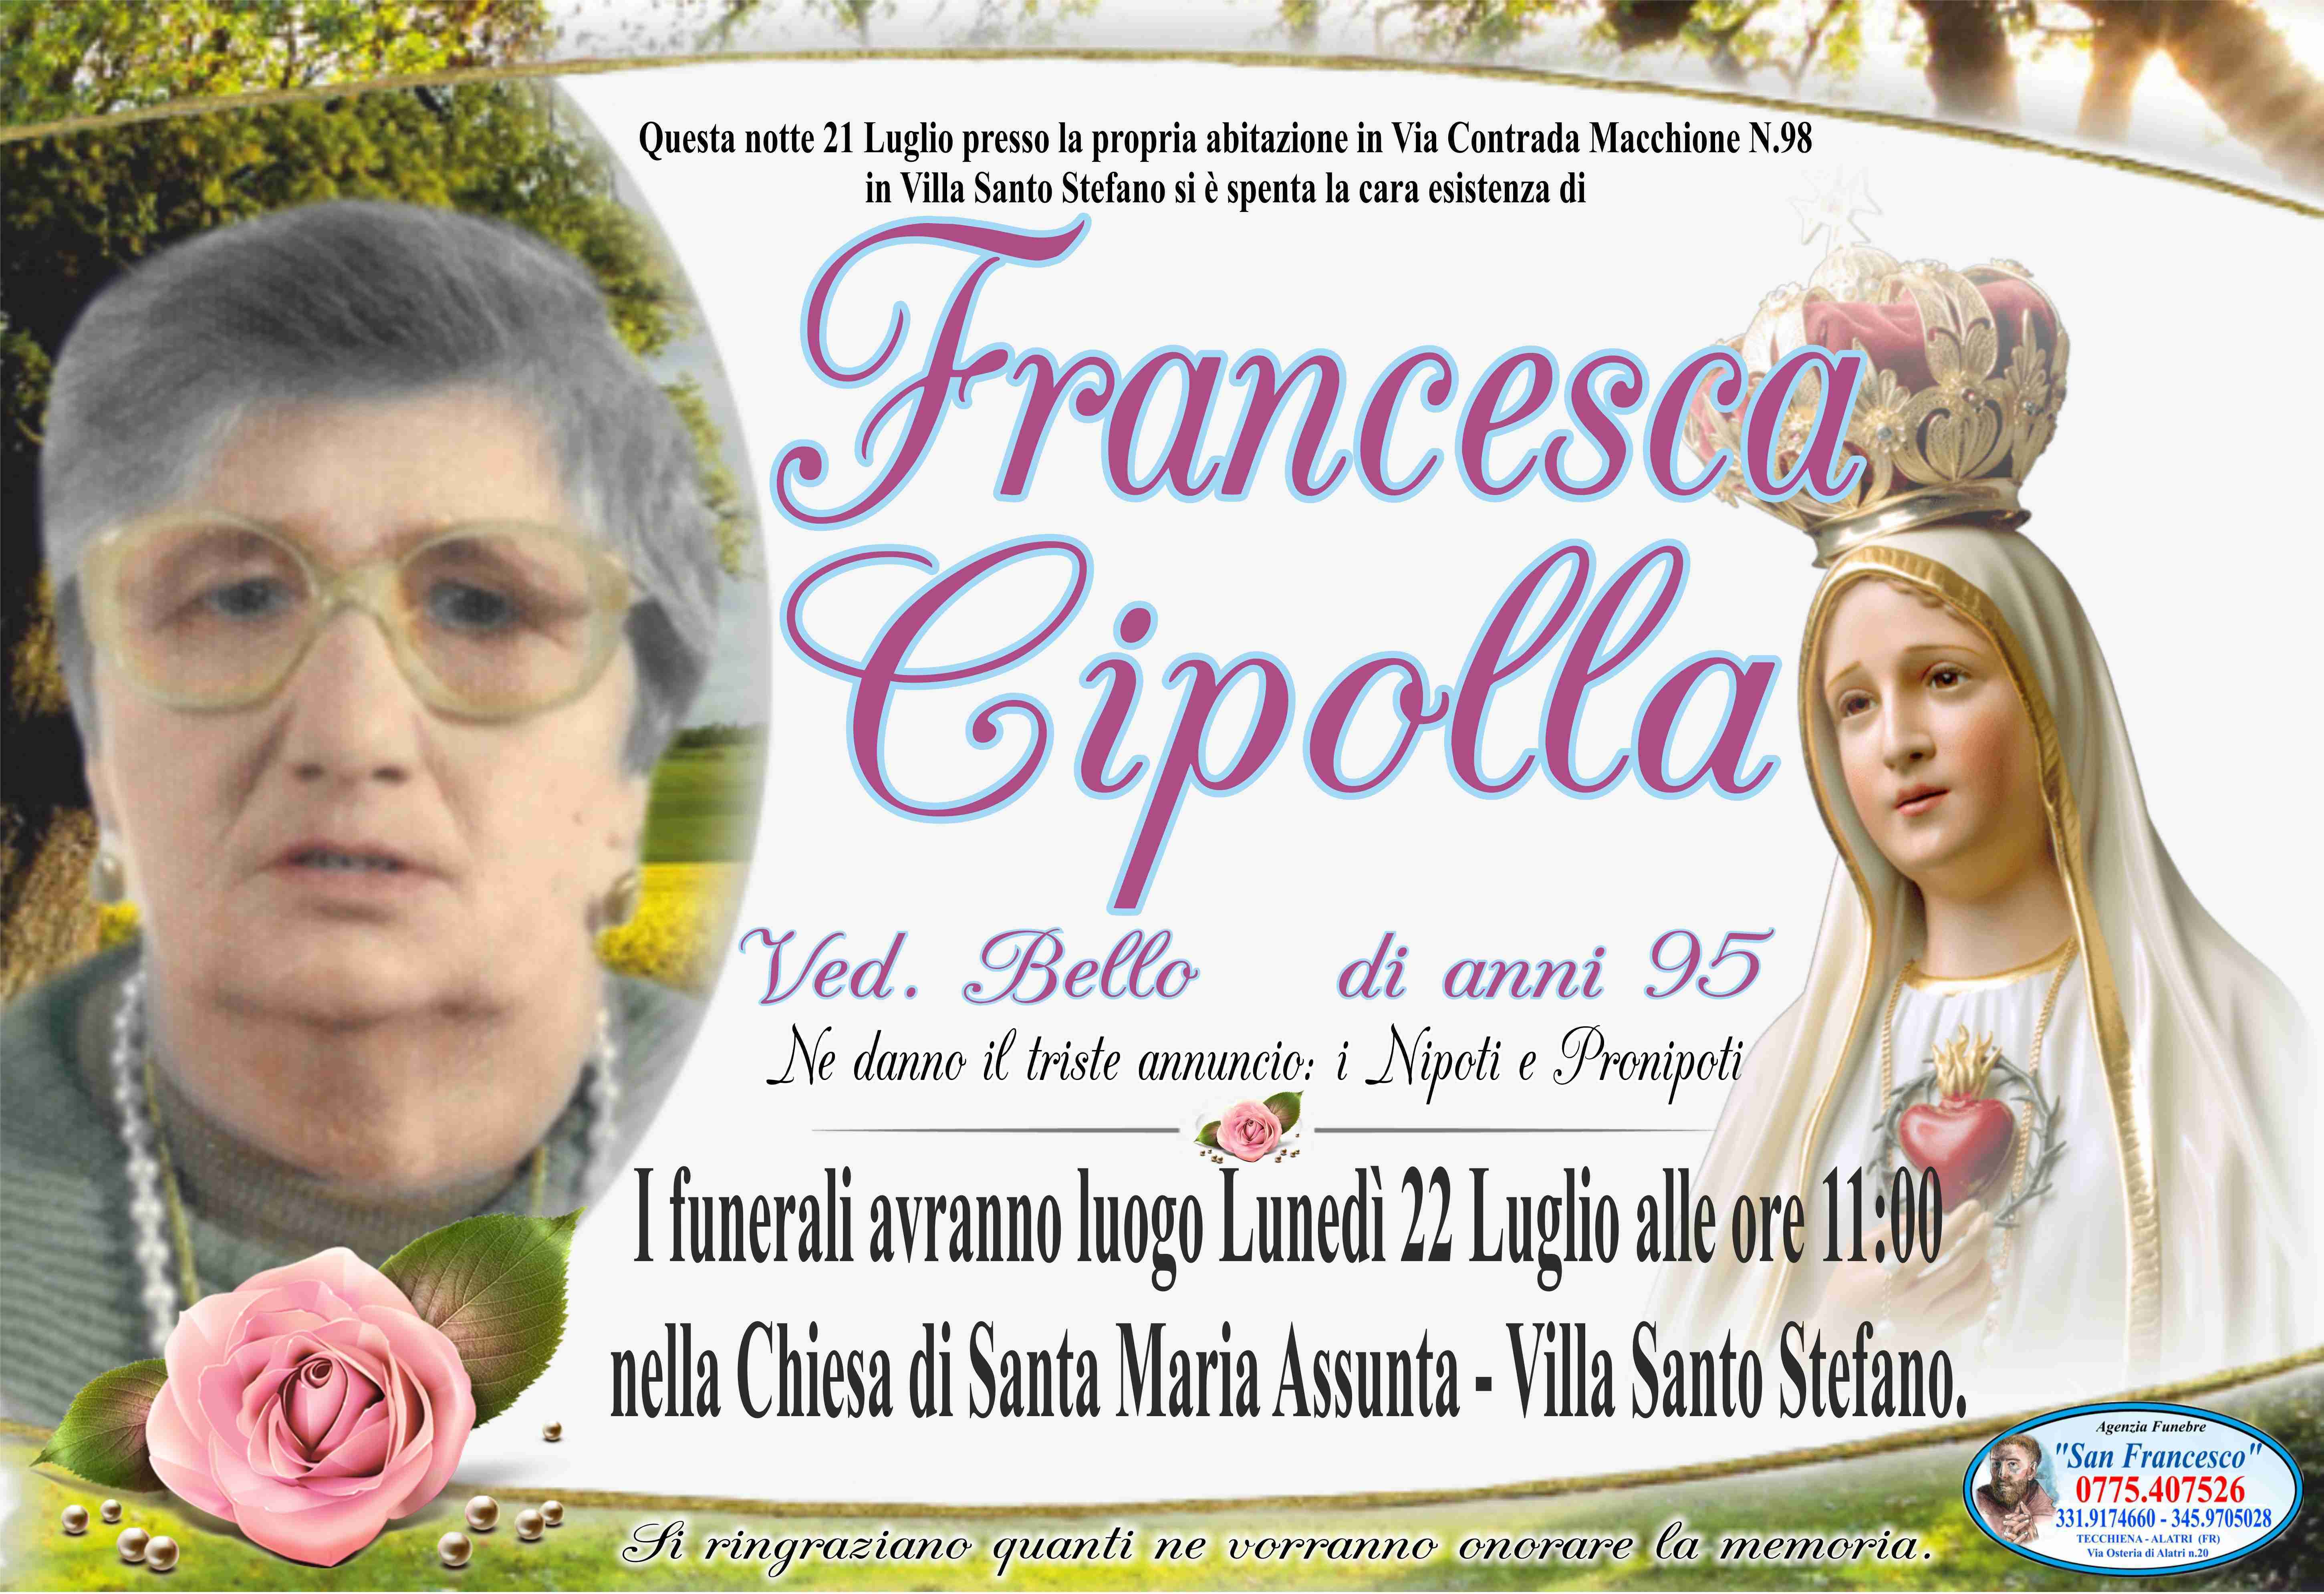 Francesca Cipolla